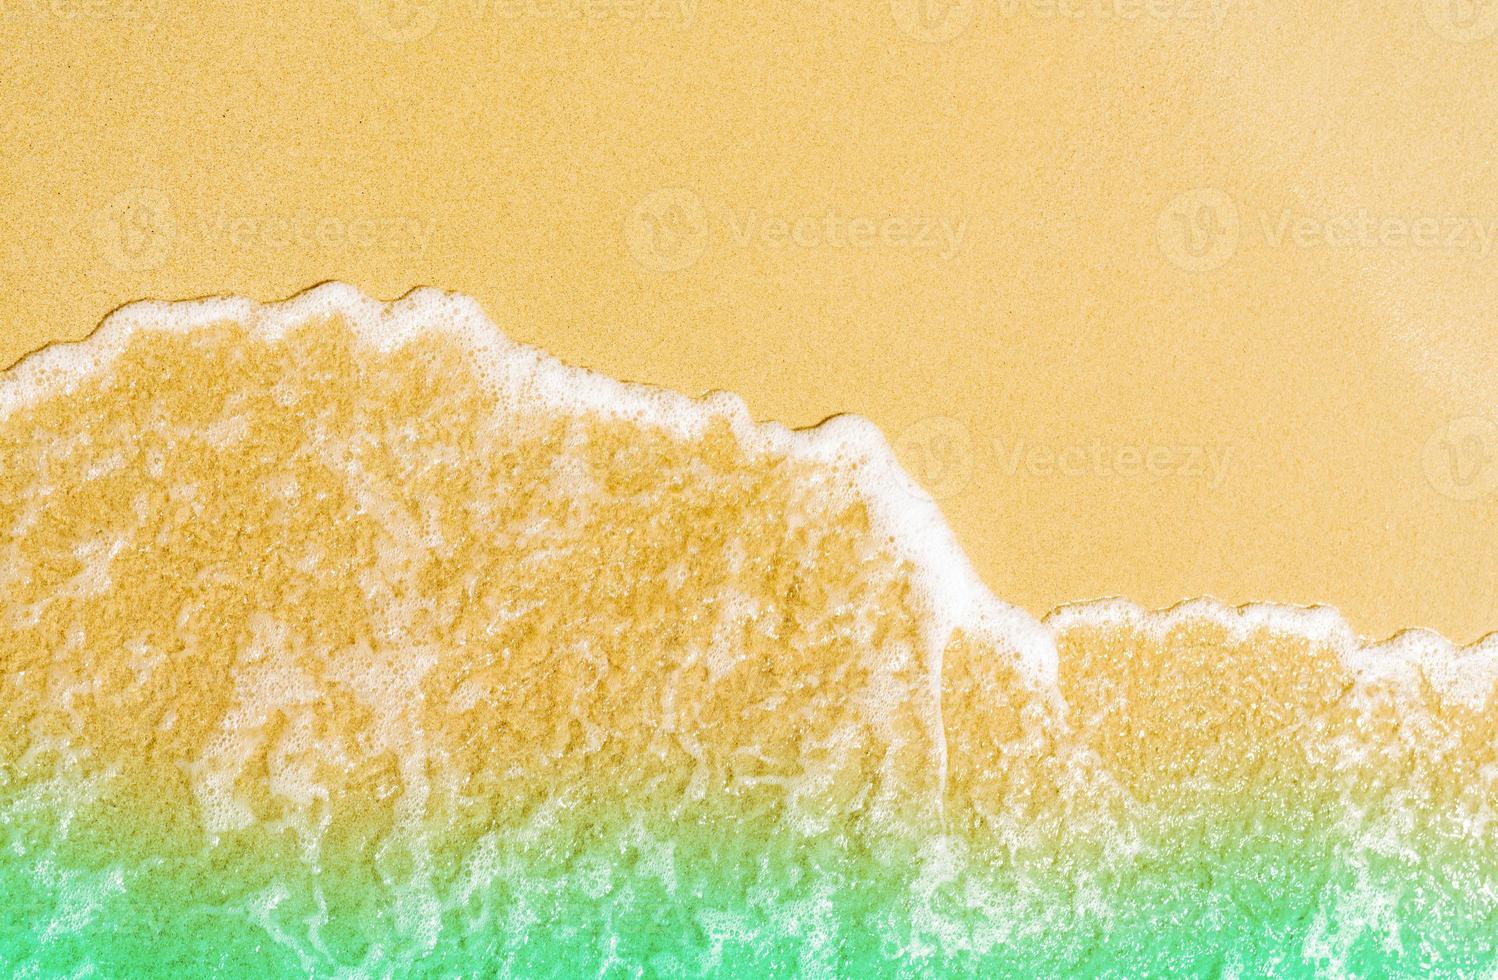 gouden zand aan zee. zeewatergolf op het strand. zand en zeewater textuur background.summer vakantie op tropisch paradijs strand concept. rimpeling van water splash op zandstrand. kalm en rustig. foto